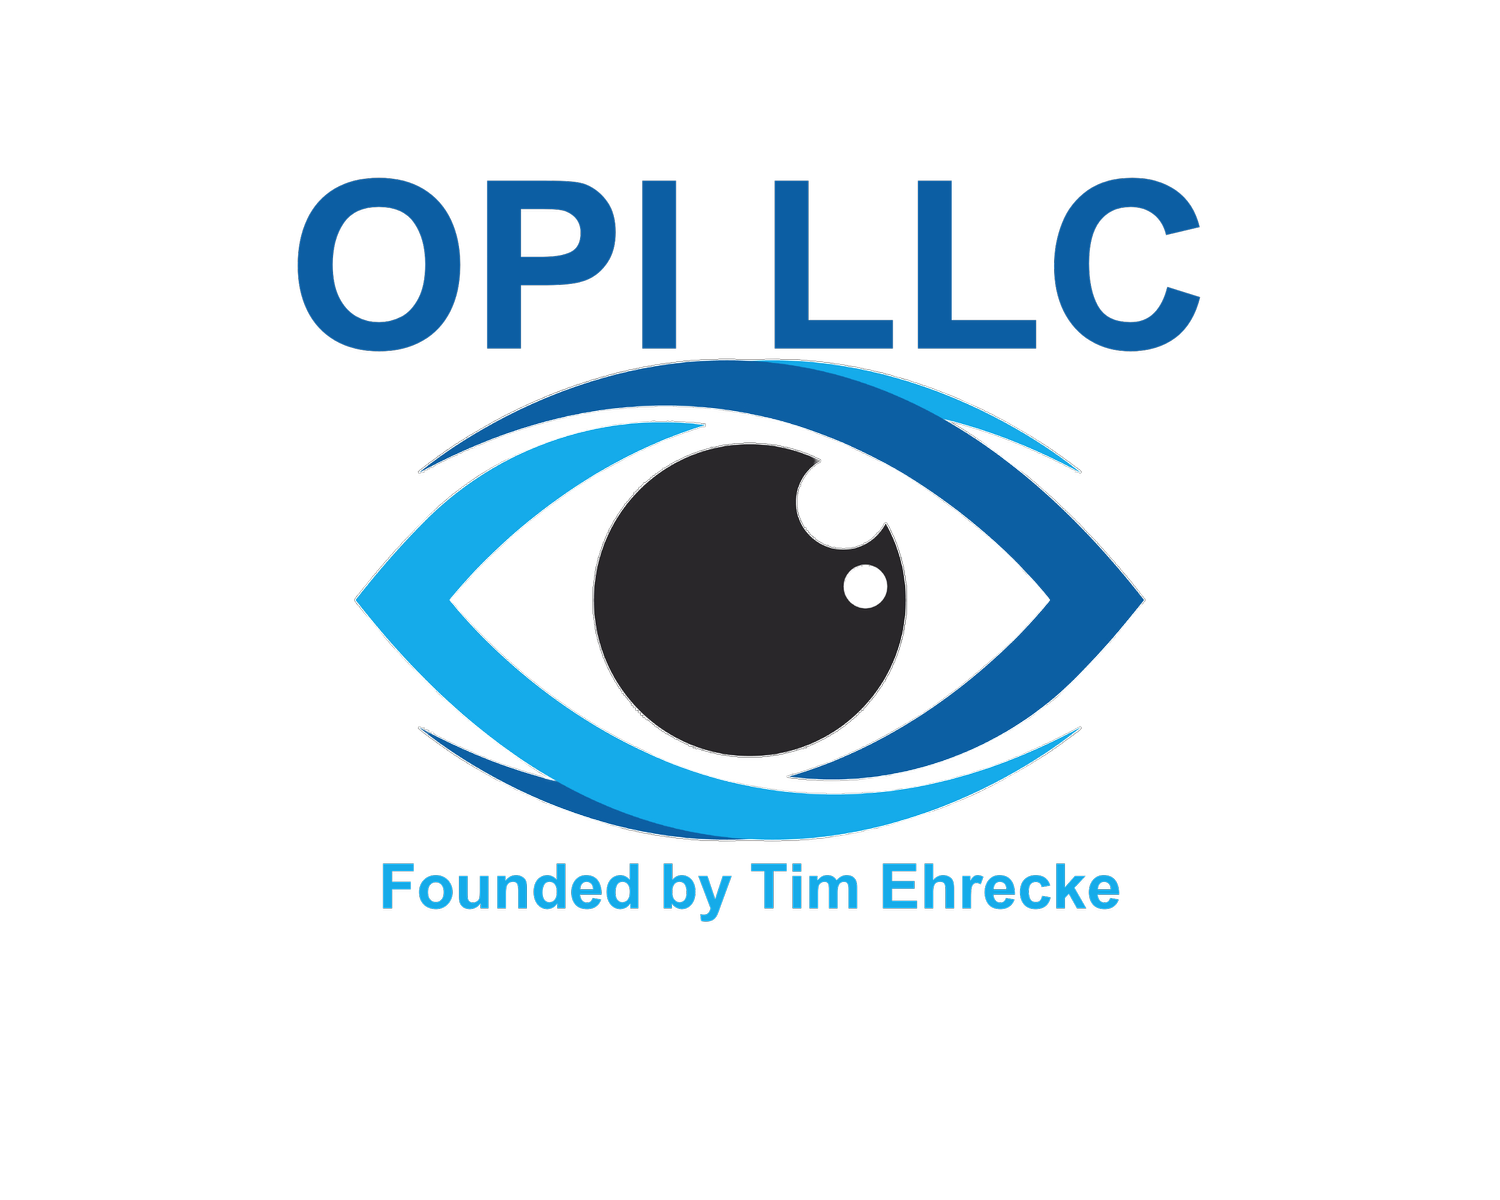 OPI LLC